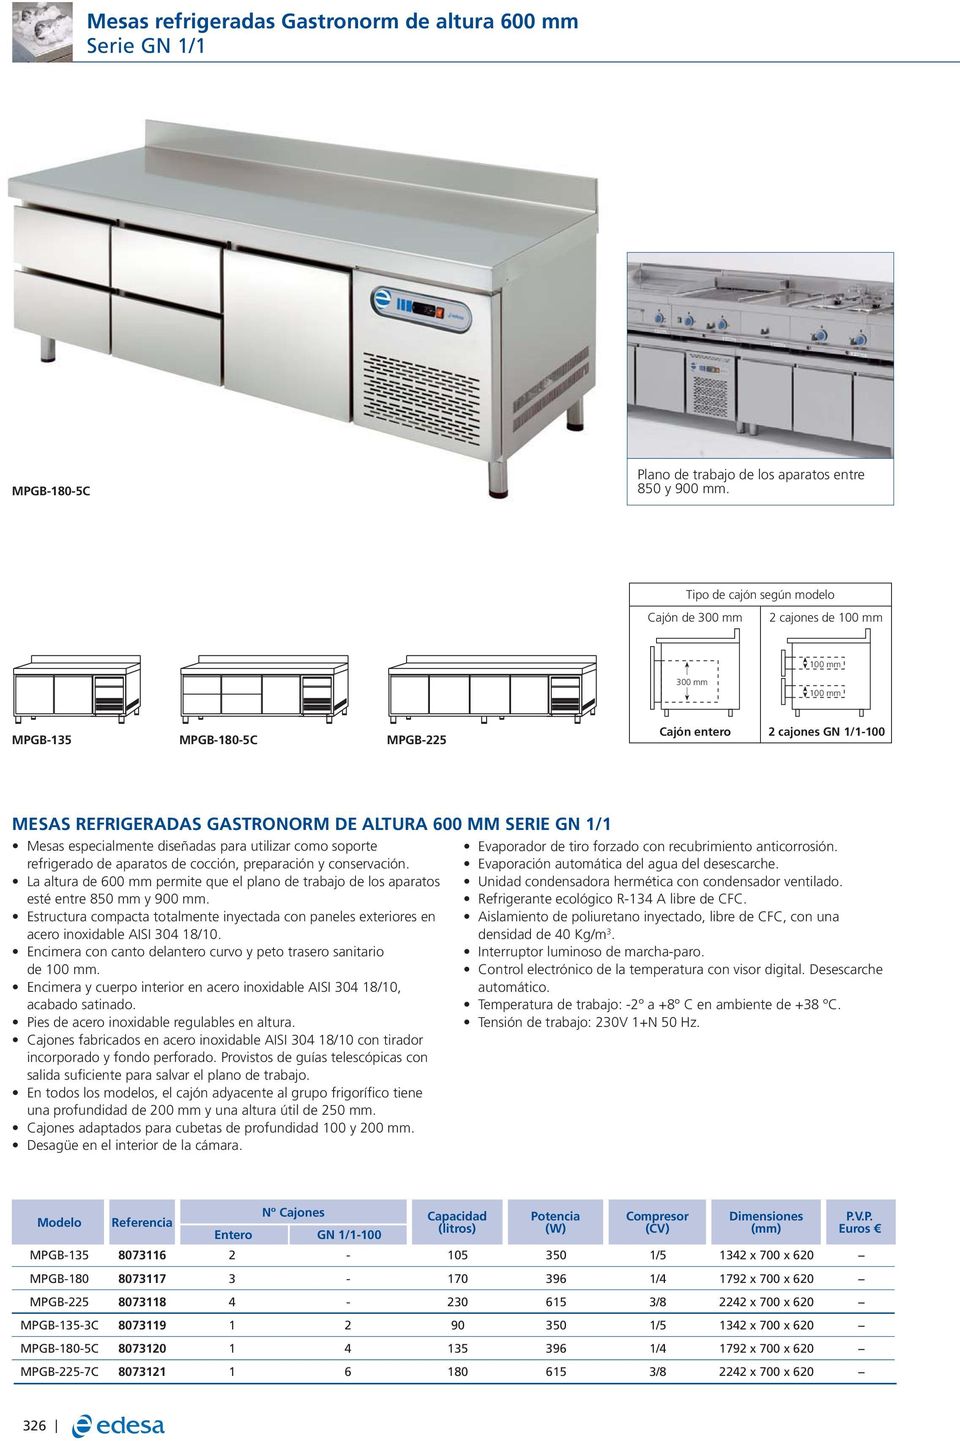 SERIE GN 1/1 Mesas especialmente diseñadas para utilizar como soporte refrigerado de aparatos de cocción, preparación y conservación.